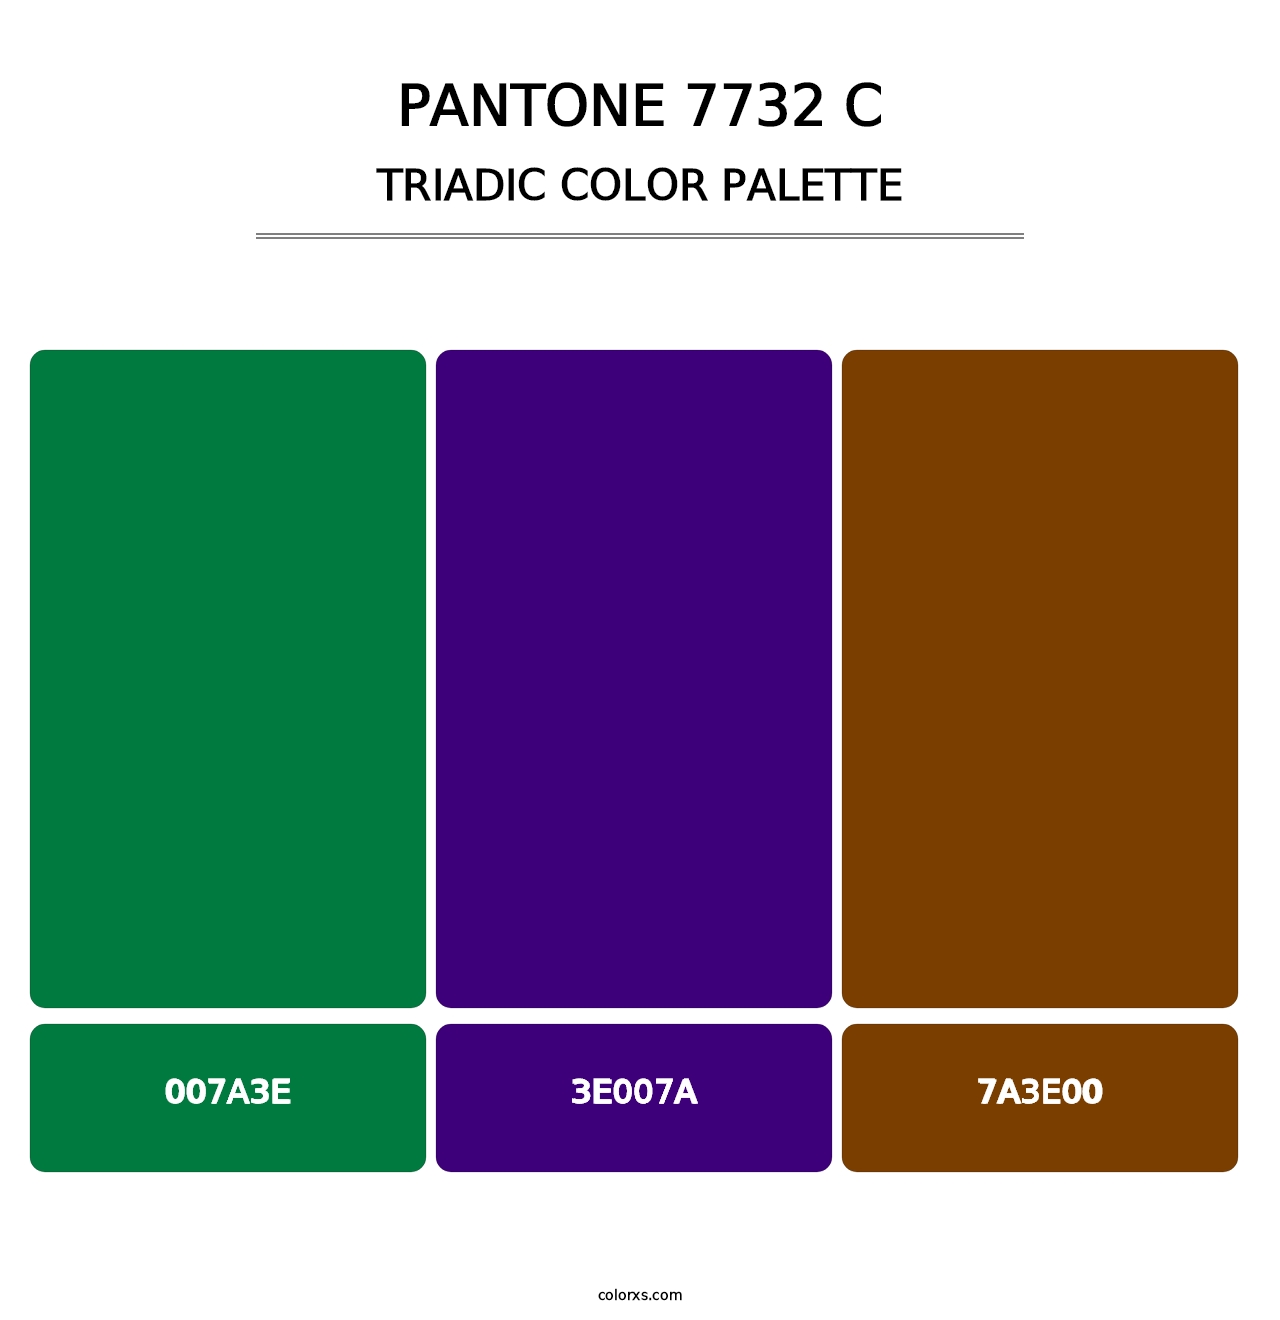 PANTONE 7732 C - Triadic Color Palette